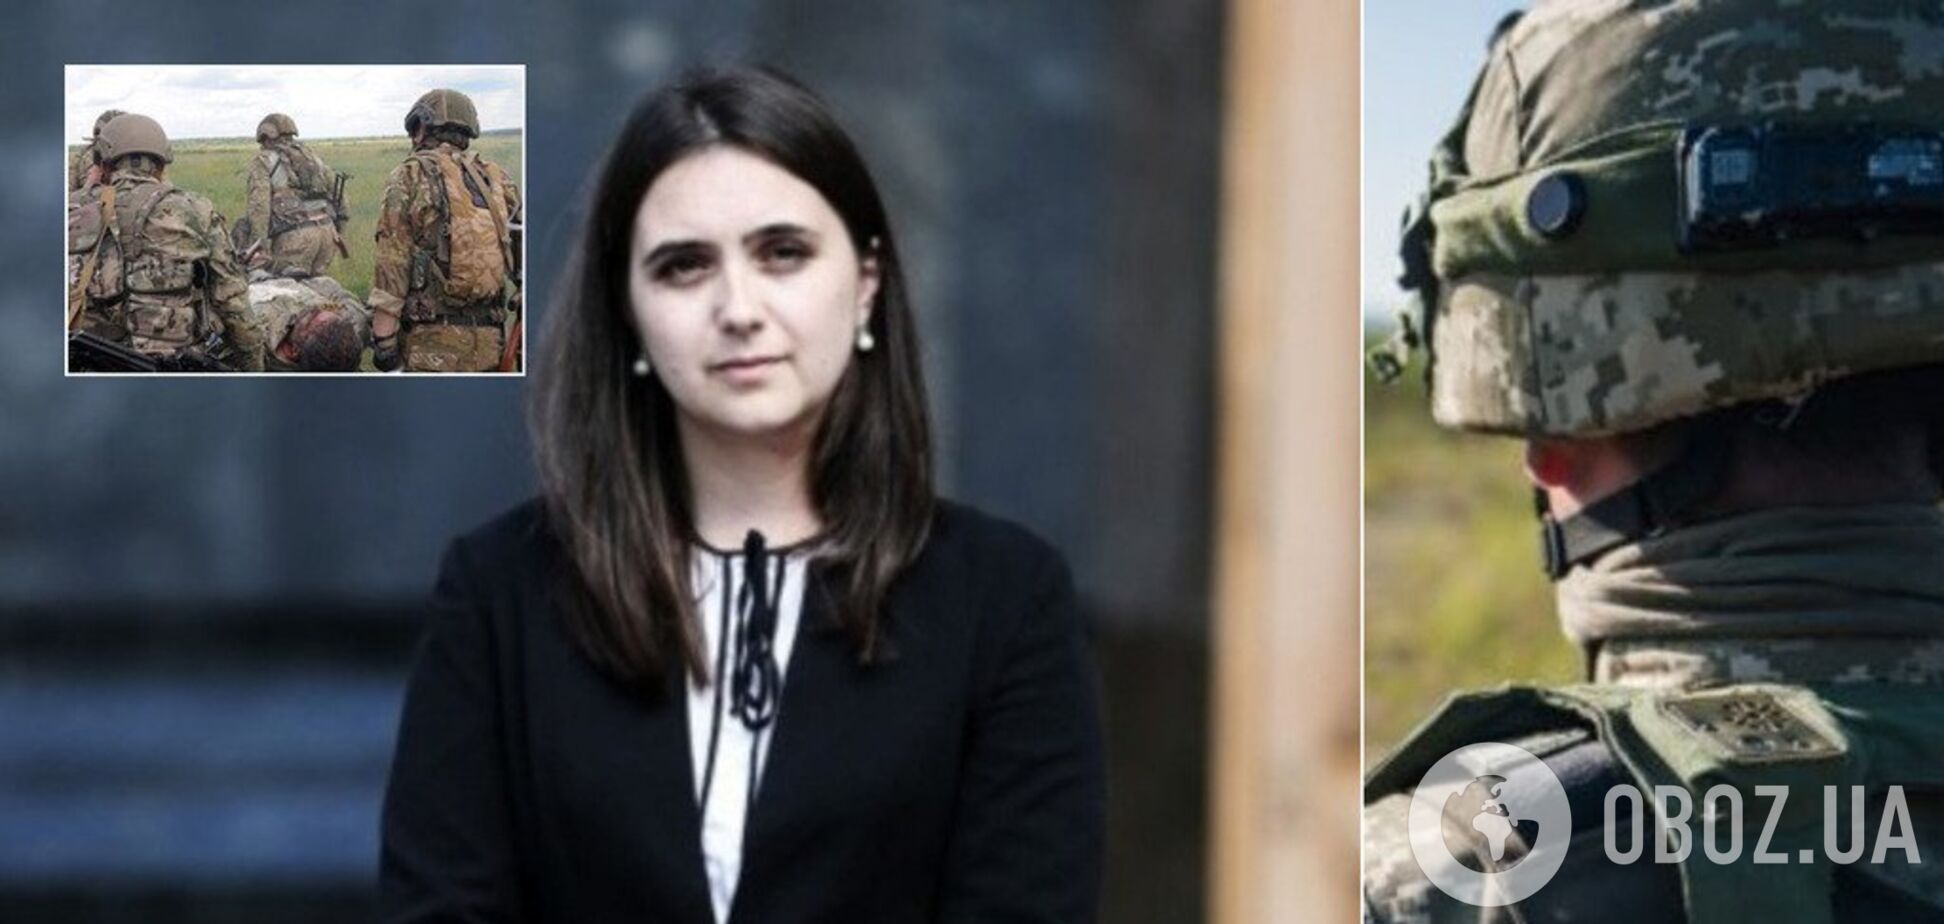 Прес-секретар Зеленського звинуватила ЗСУ у вбивстві жителів Донбасу